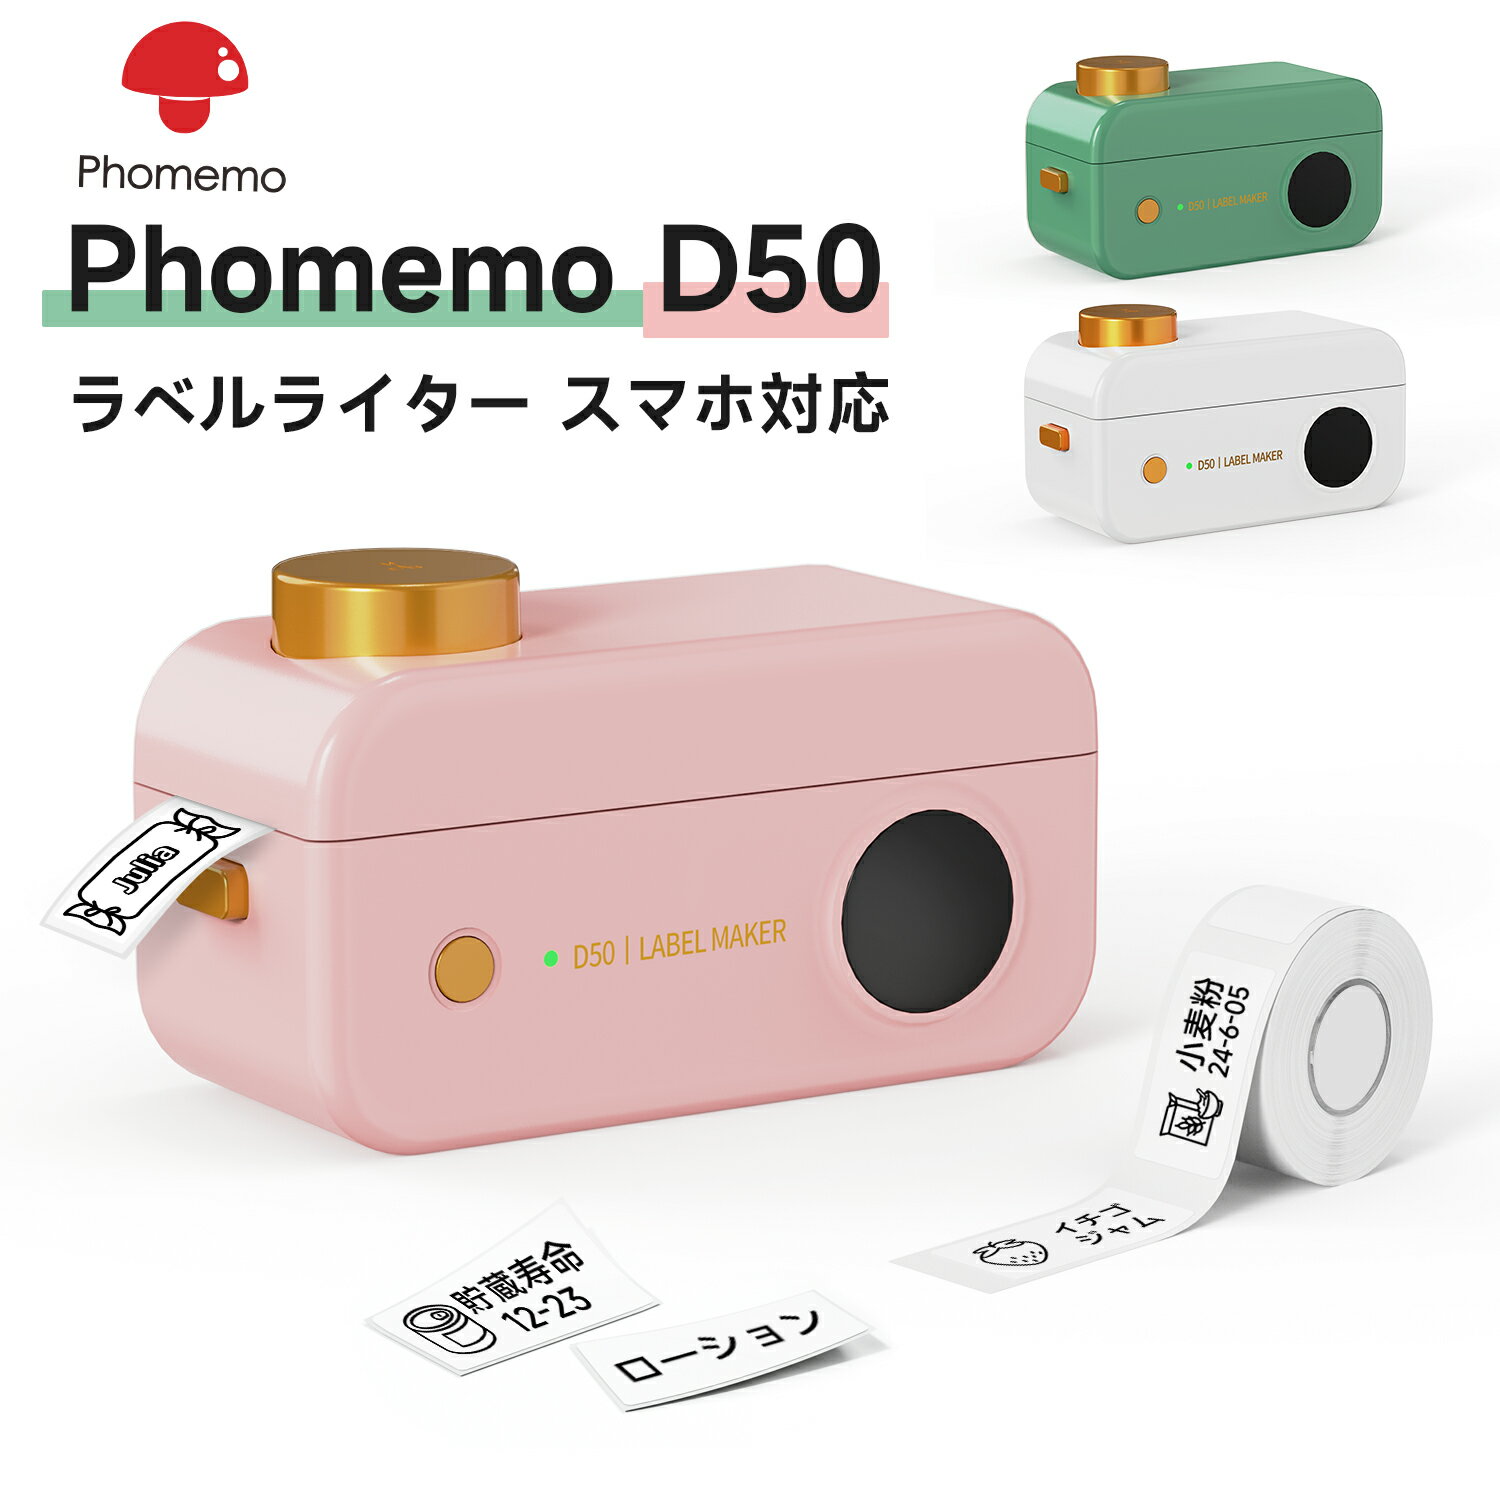 Phomemo D50 感熱ラベルプリンター 自動ラベル認識 Bluetooth接続多機能ラベルプリンター【16mm-24mm幅テープ】 感熱…